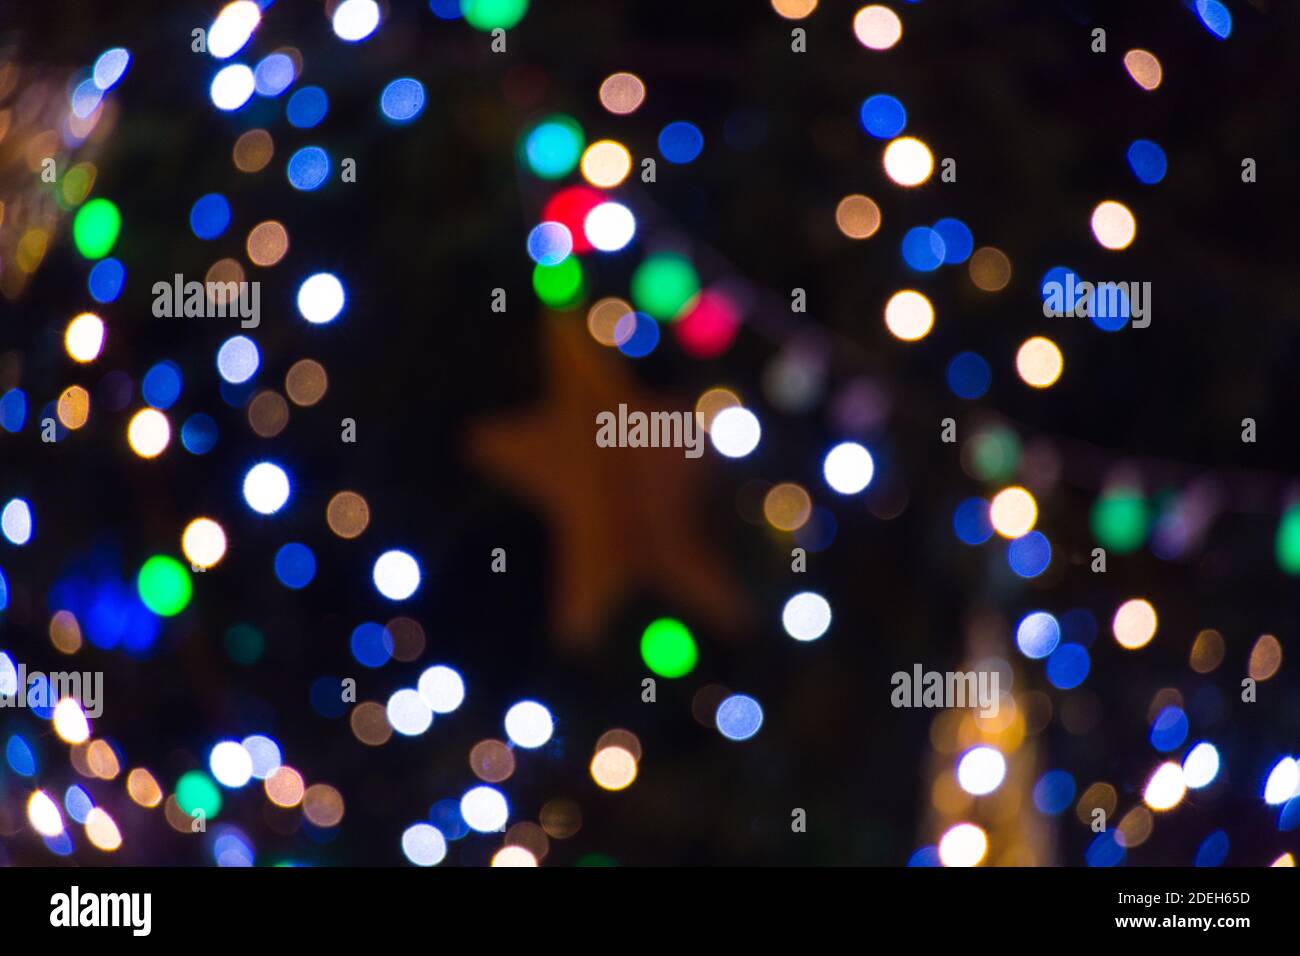 Farbenfroher abstrakter Bokeh-Hintergrund. Winterdekoration, in der Nacht. Stockfoto